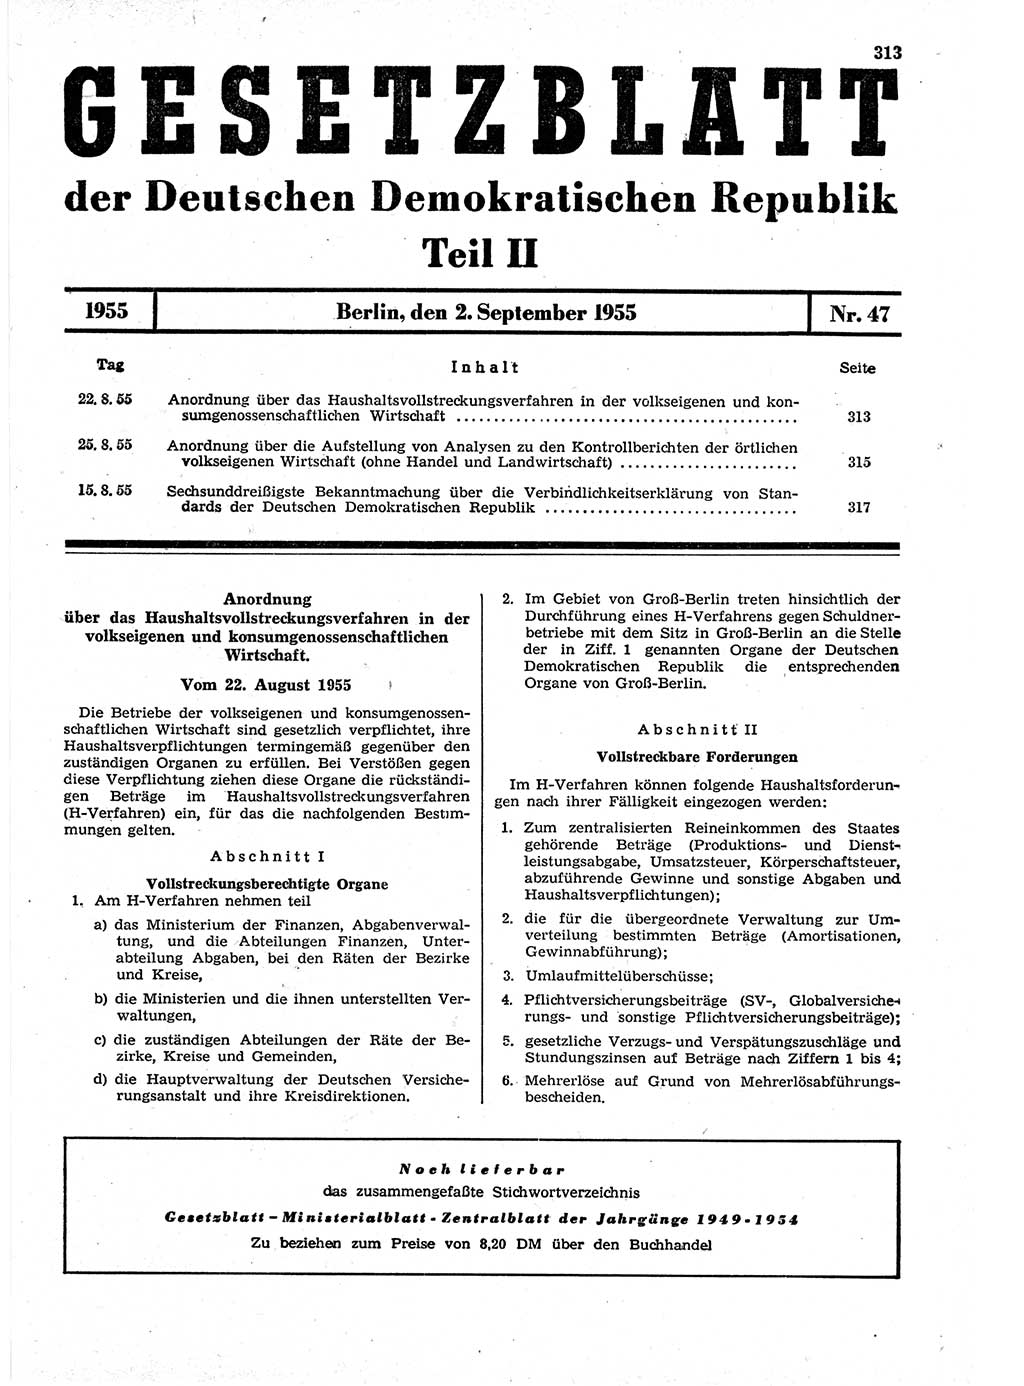 Gesetzblatt (GBl.) der Deutschen Demokratischen Republik (DDR) Teil ⅠⅠ 1955, Seite 313 (GBl. DDR ⅠⅠ 1955, S. 313)